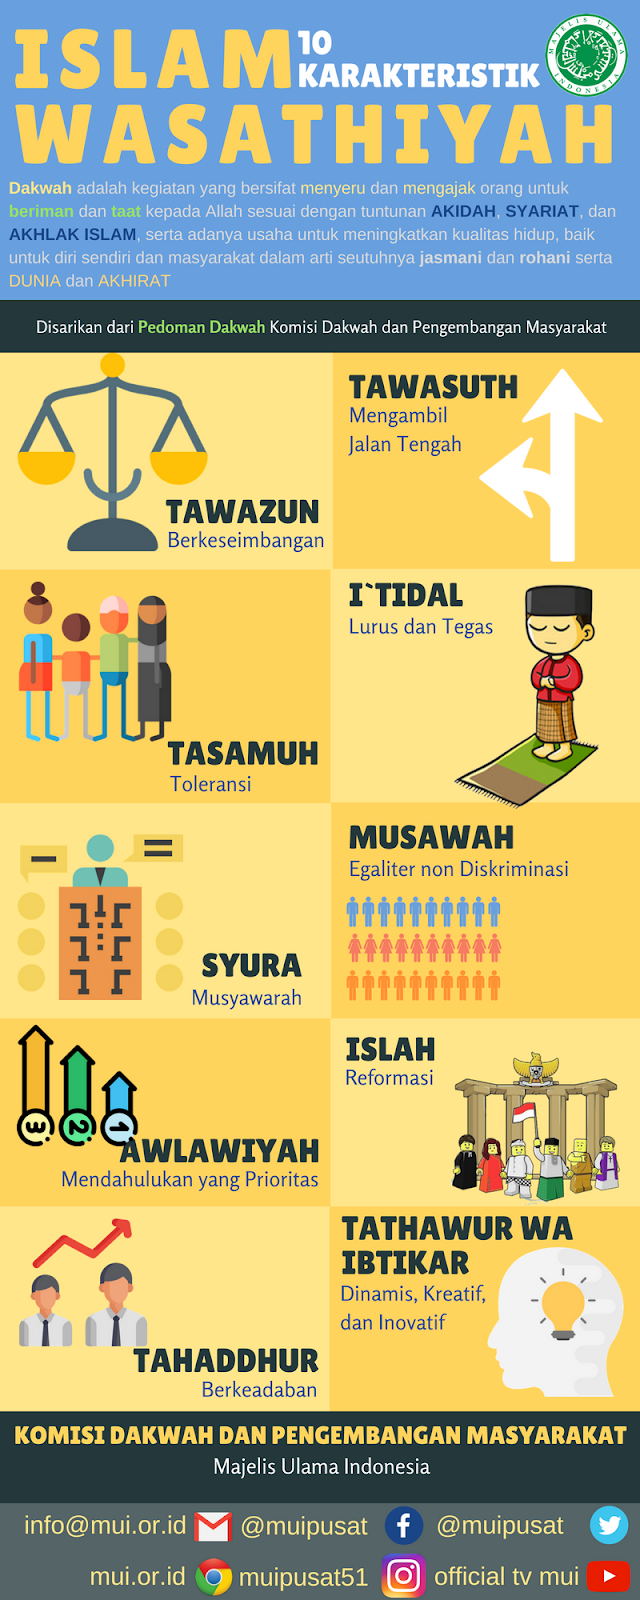 10 Karakteristik ISLAM WASATHIYAH Bagi Pendakwah